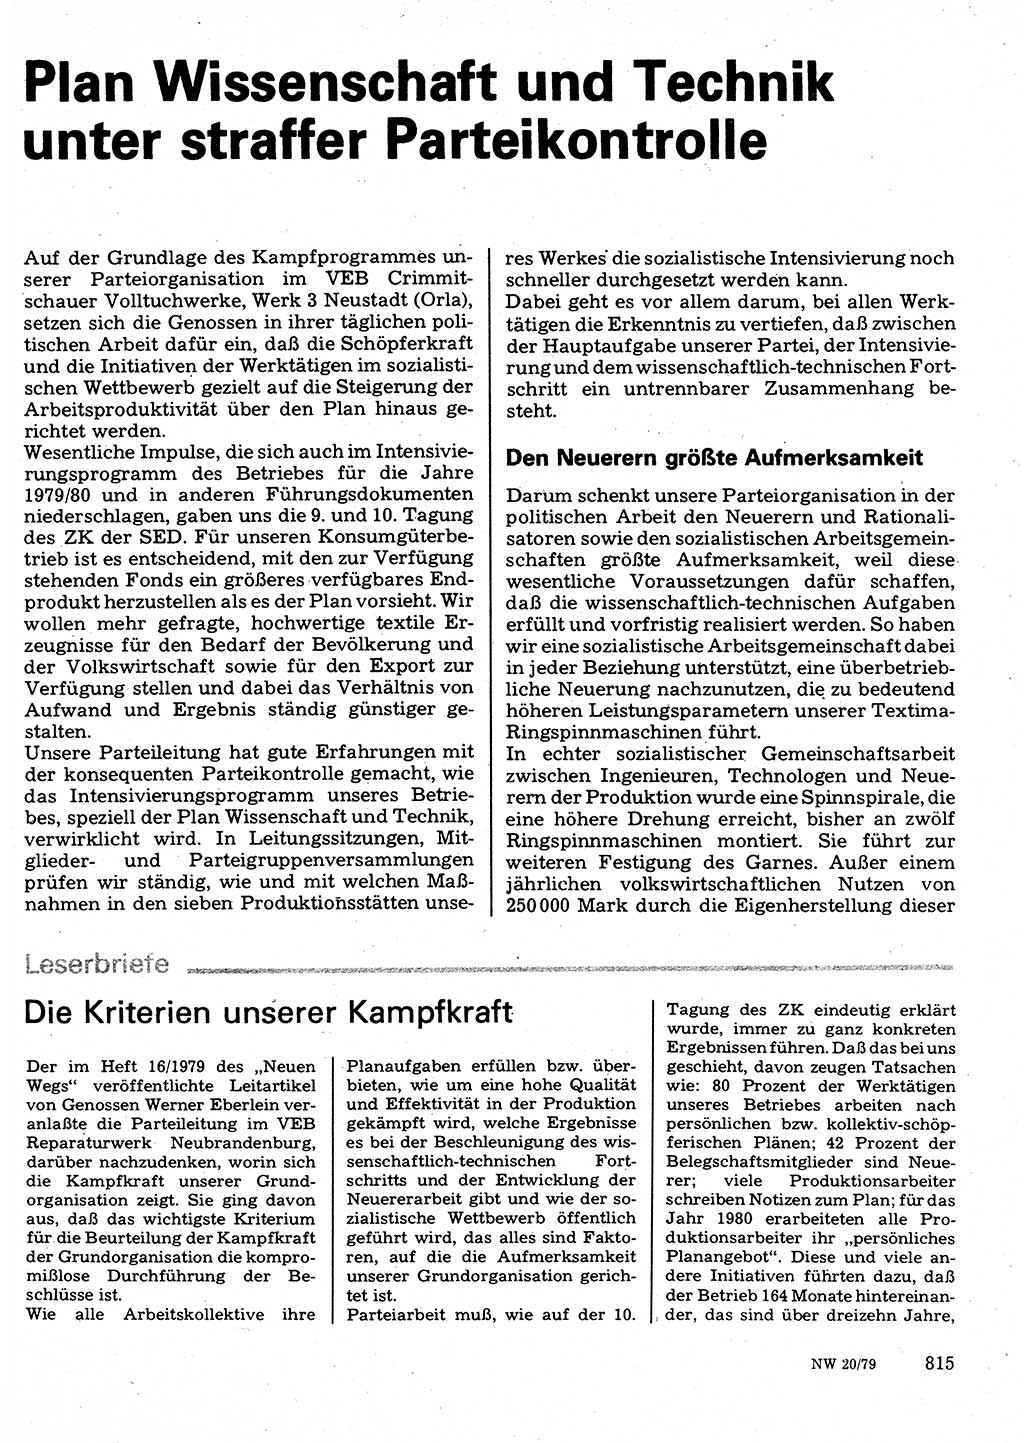 Neuer Weg (NW), Organ des Zentralkomitees (ZK) der SED (Sozialistische Einheitspartei Deutschlands) für Fragen des Parteilebens, 34. Jahrgang [Deutsche Demokratische Republik (DDR)] 1979, Seite 815 (NW ZK SED DDR 1979, S. 815)